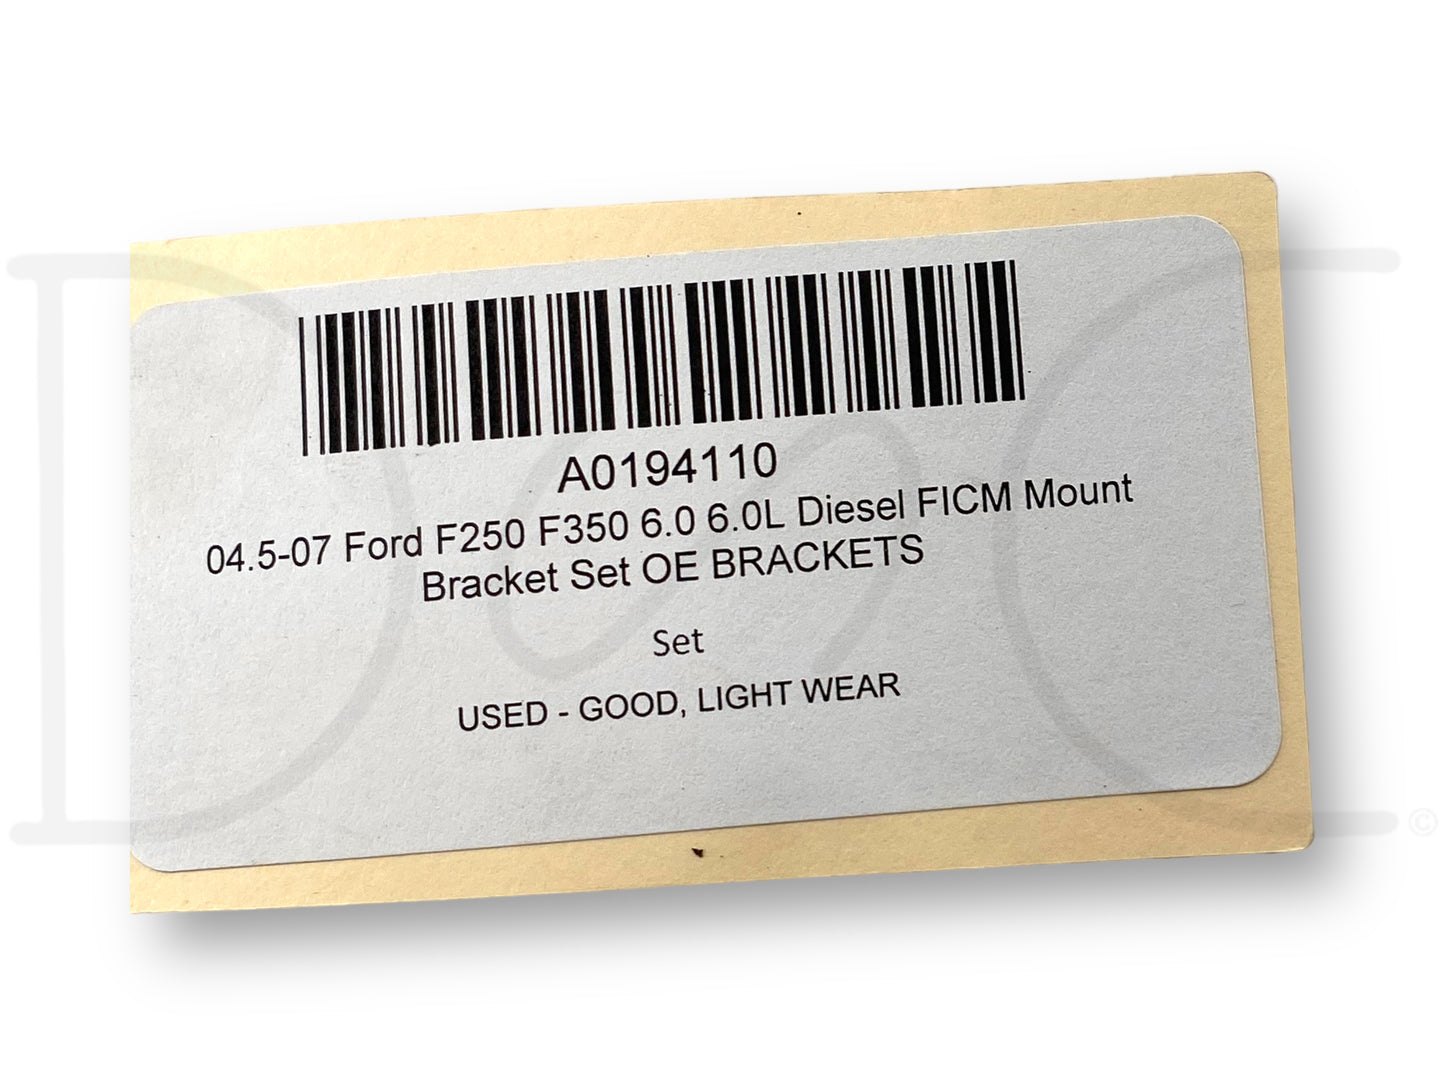 04.5-07 Ford F250 F350 6.0 6.0L Diesel FICM Mount Bracket Set OE Brackets